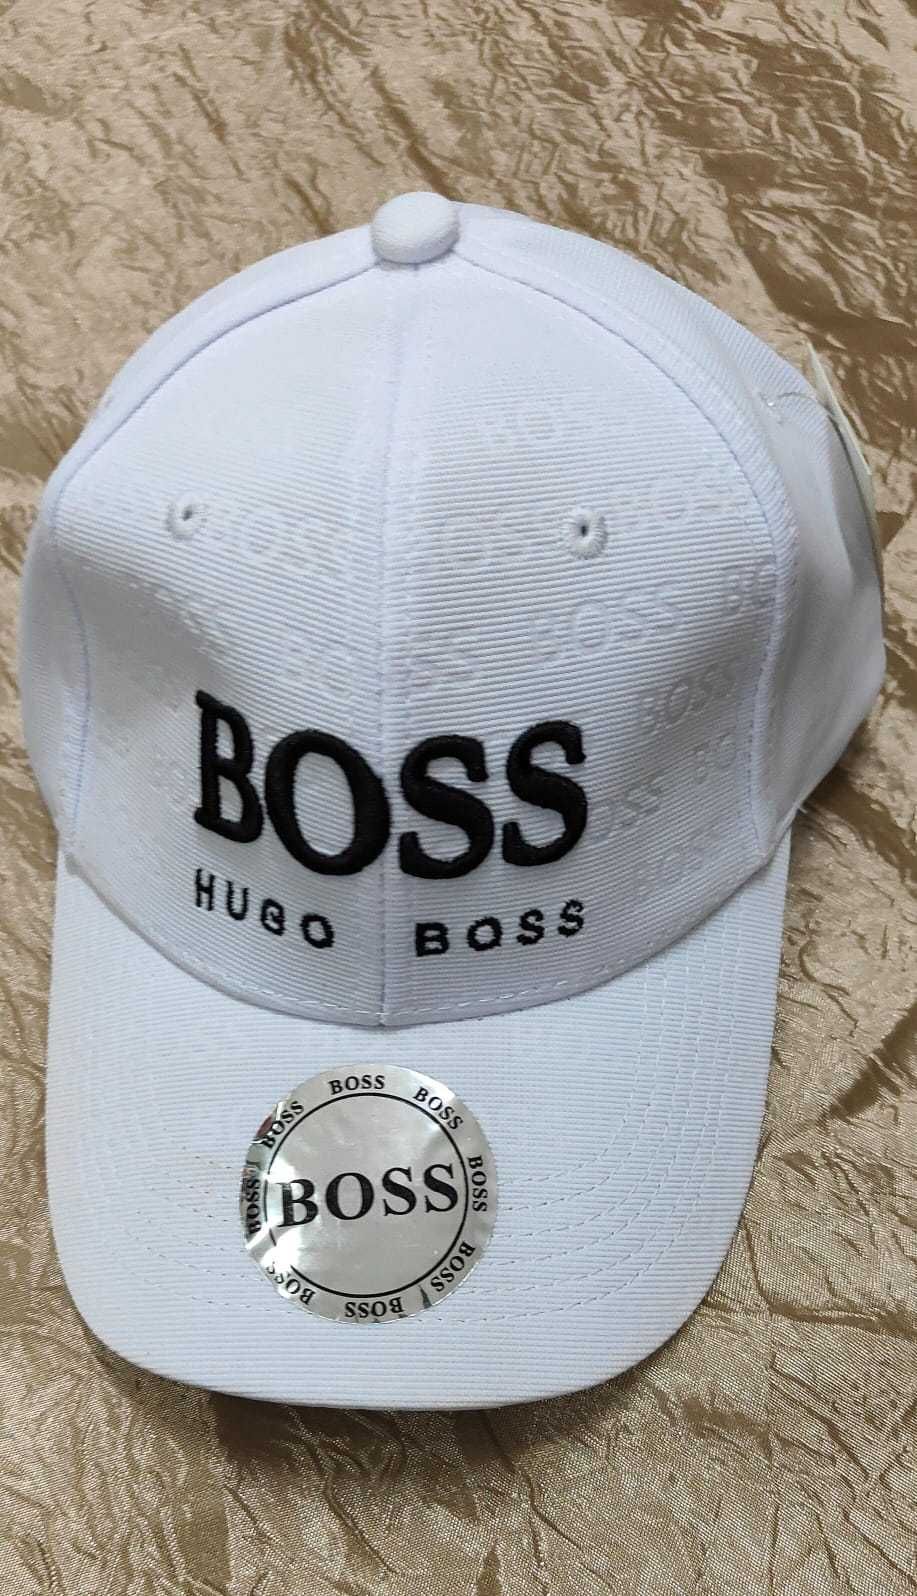 bones boss novos